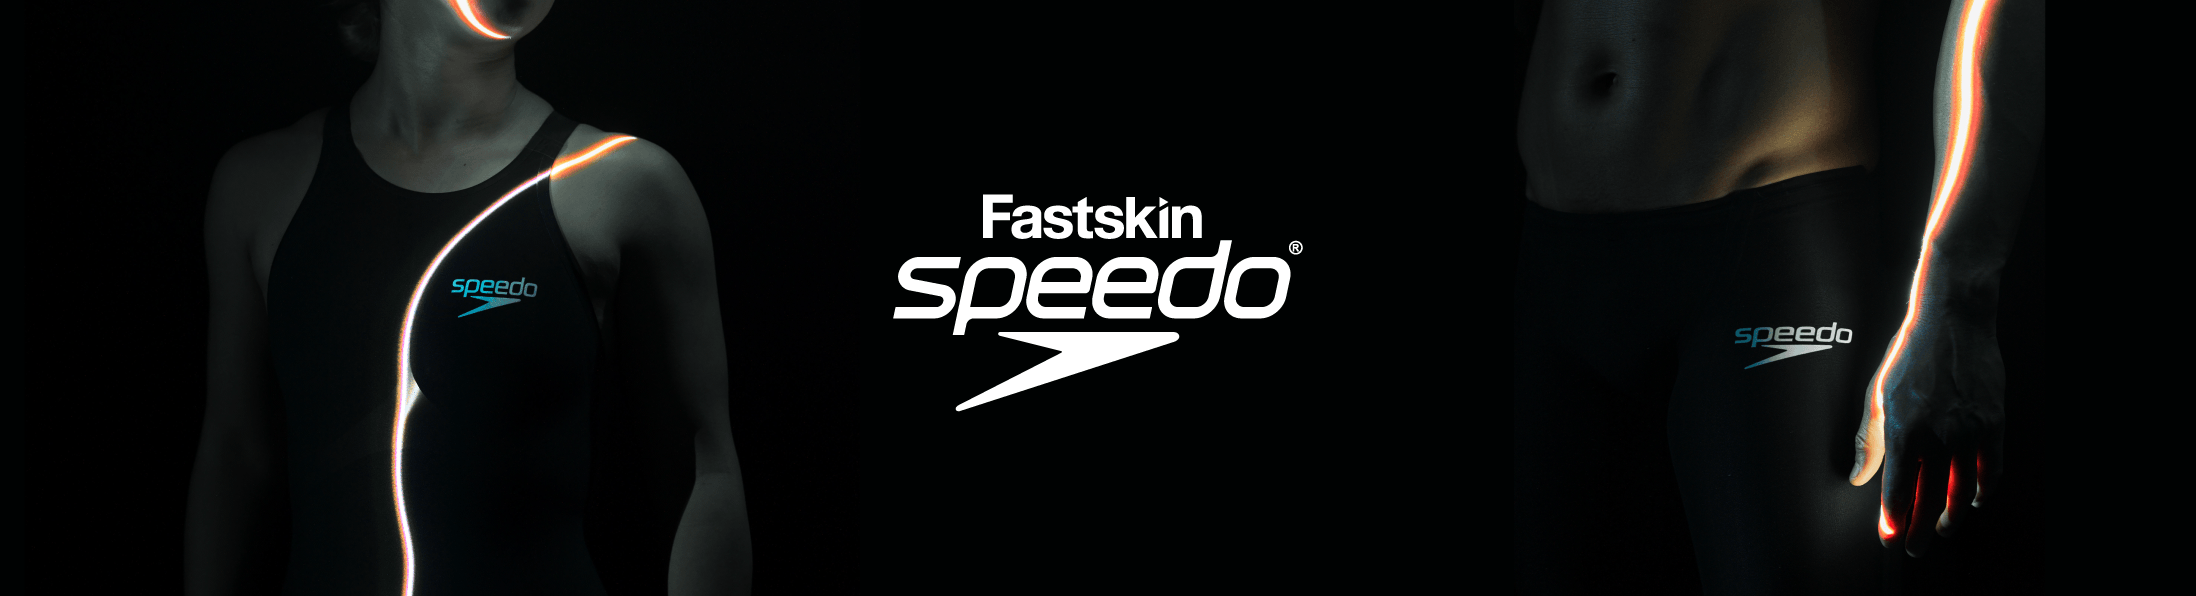 Fastskin Speedo